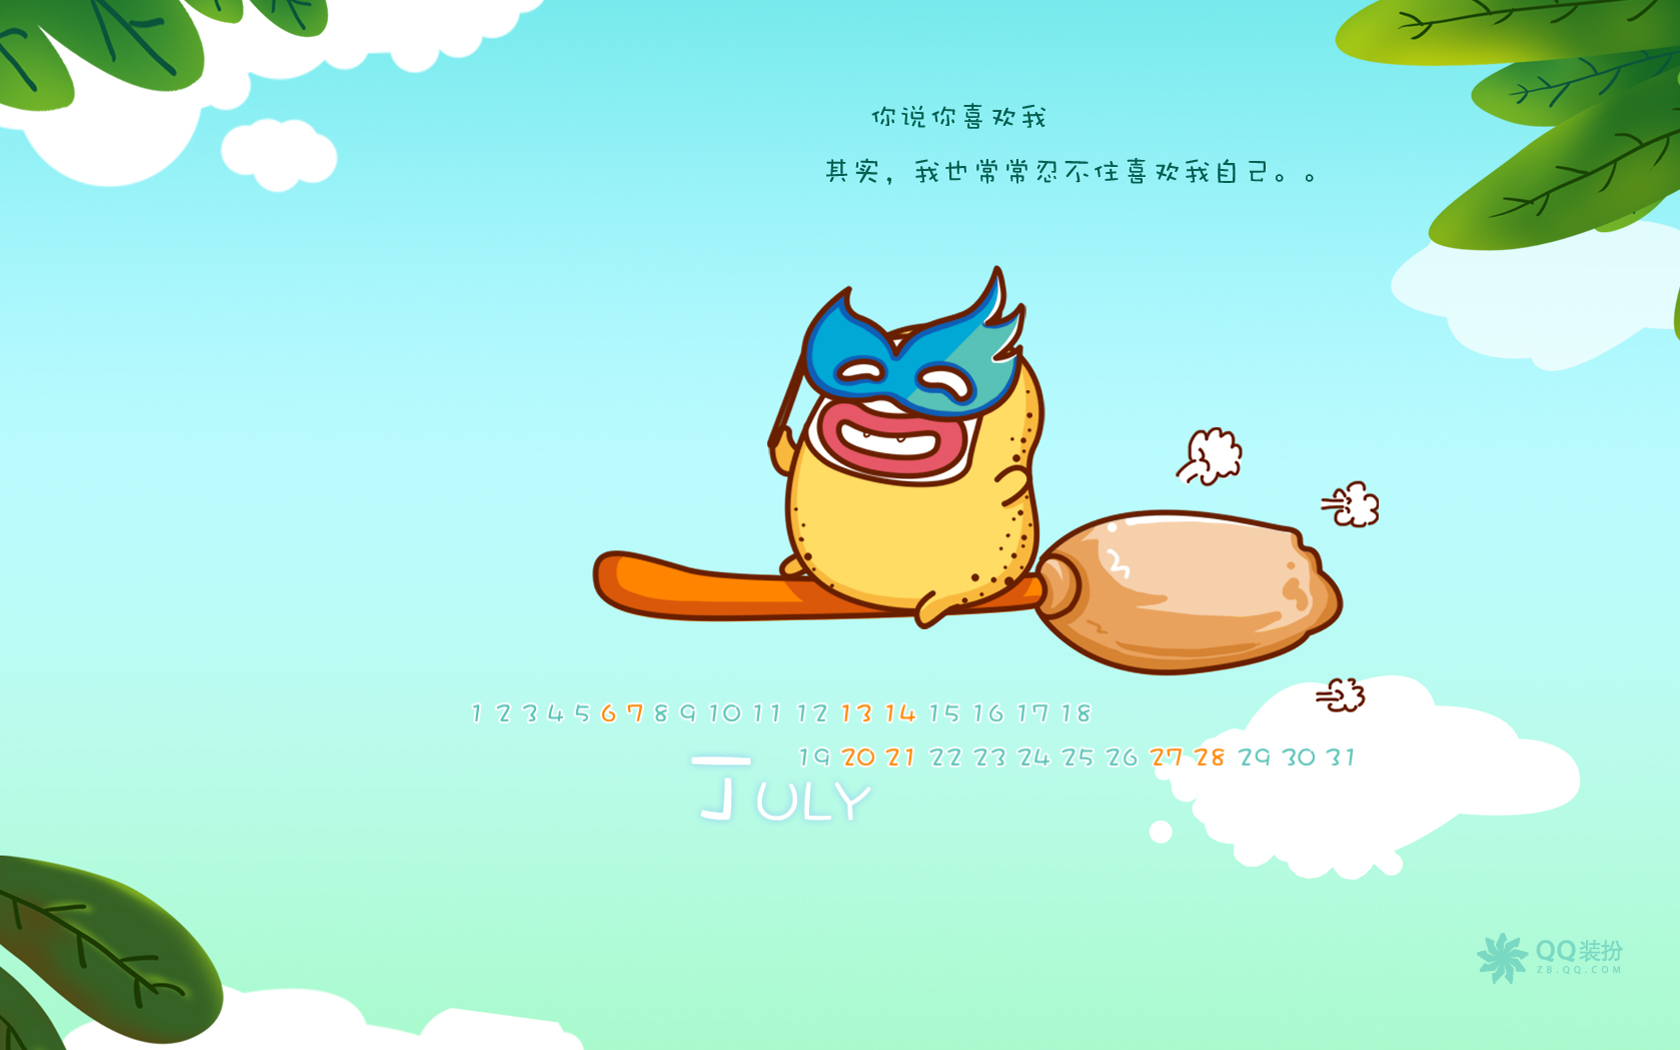 2013年7月(七月)月历壁纸 腾讯篇 (宽屏+普屏)(壁纸70)